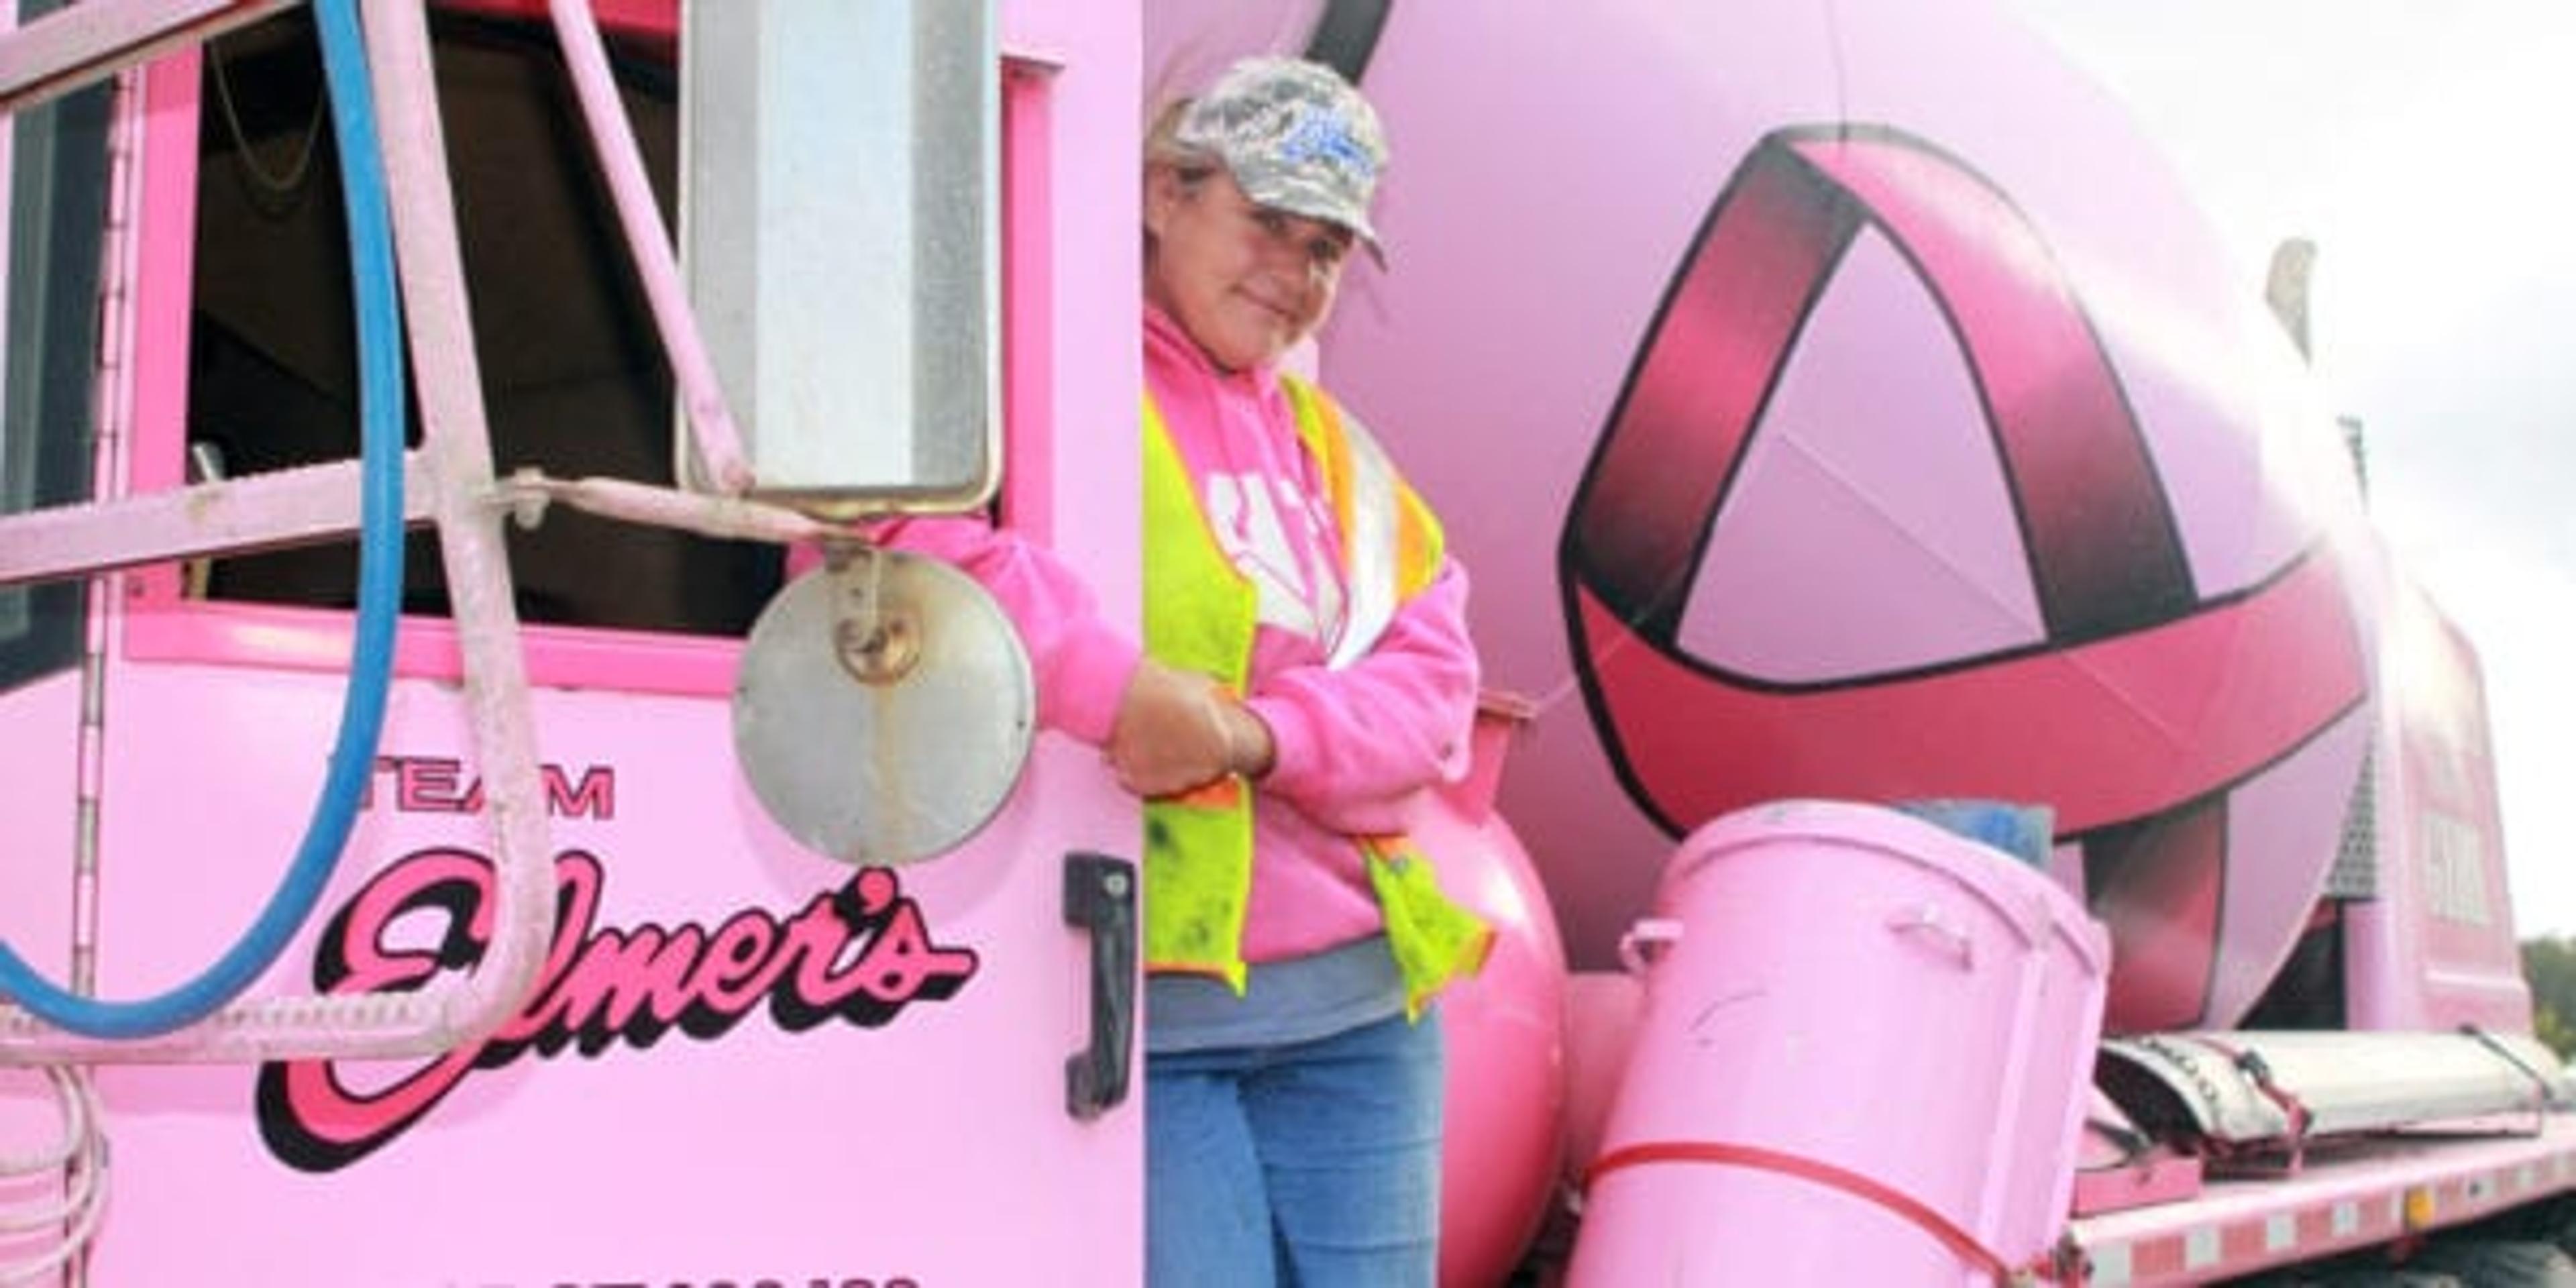 team elmer's pink cement mixer